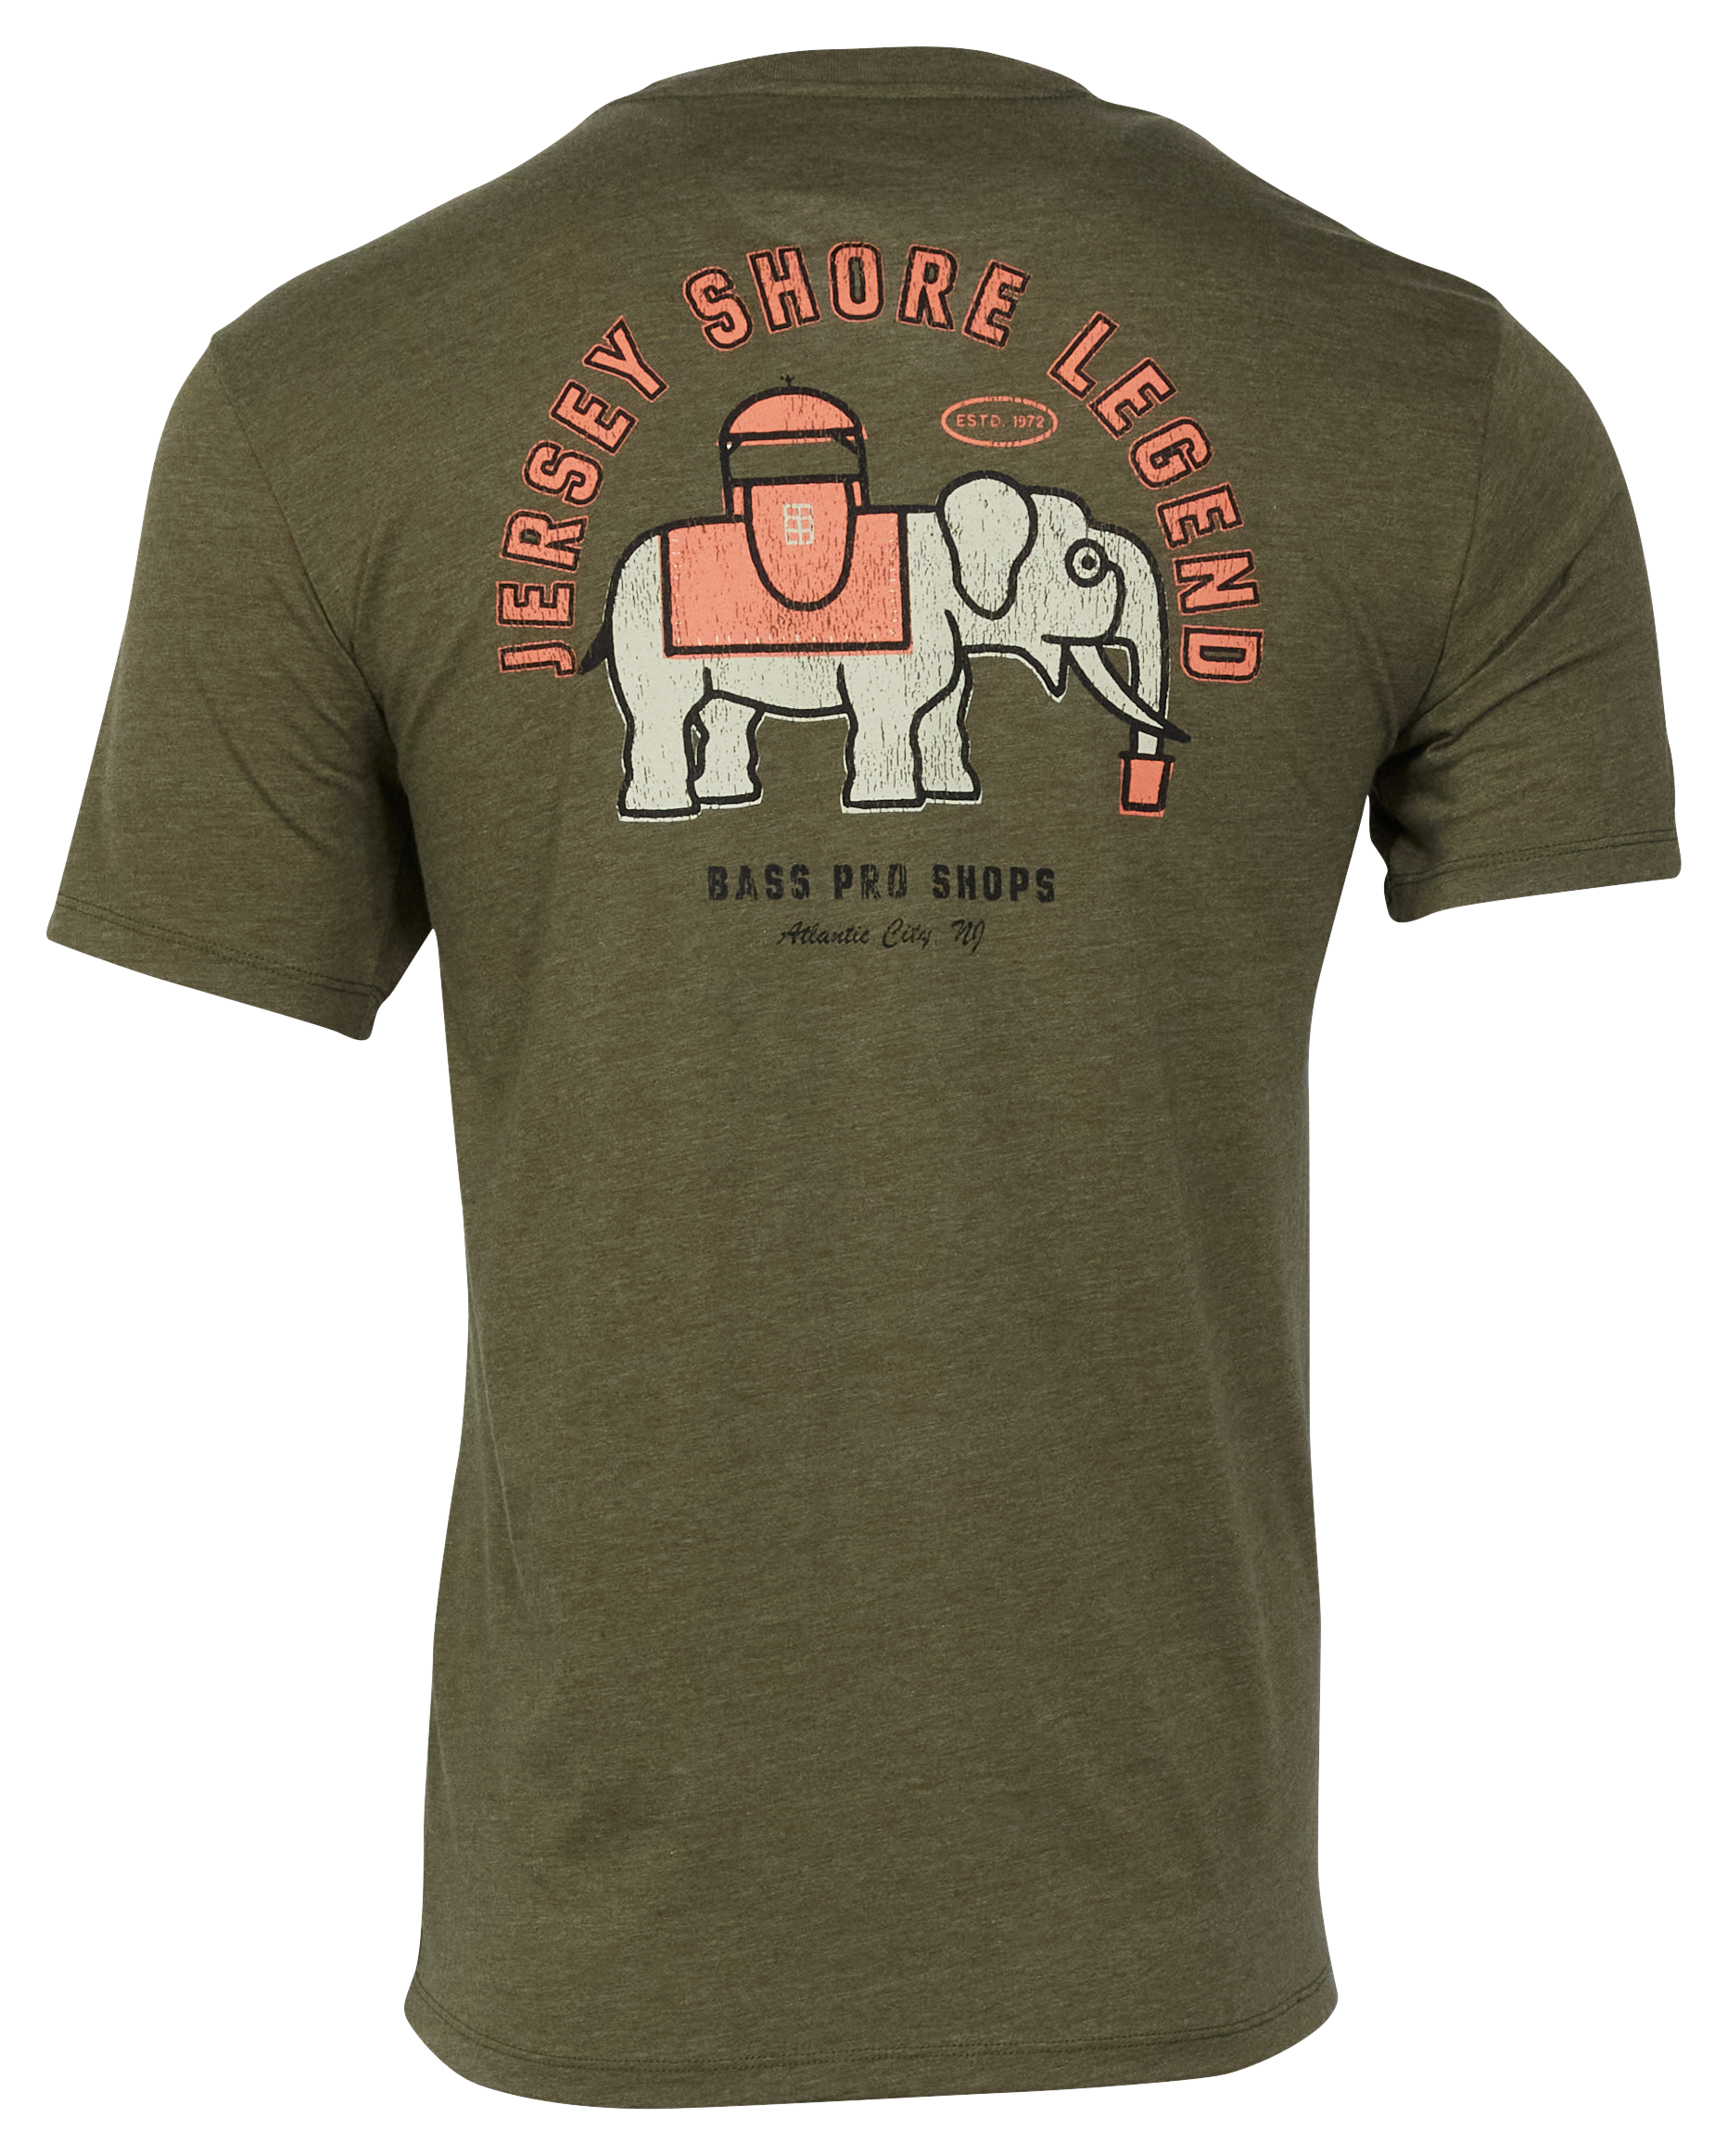 Bass Pro Shops Jersey Shore Legend Short-Sleeve T-Shirt for Men